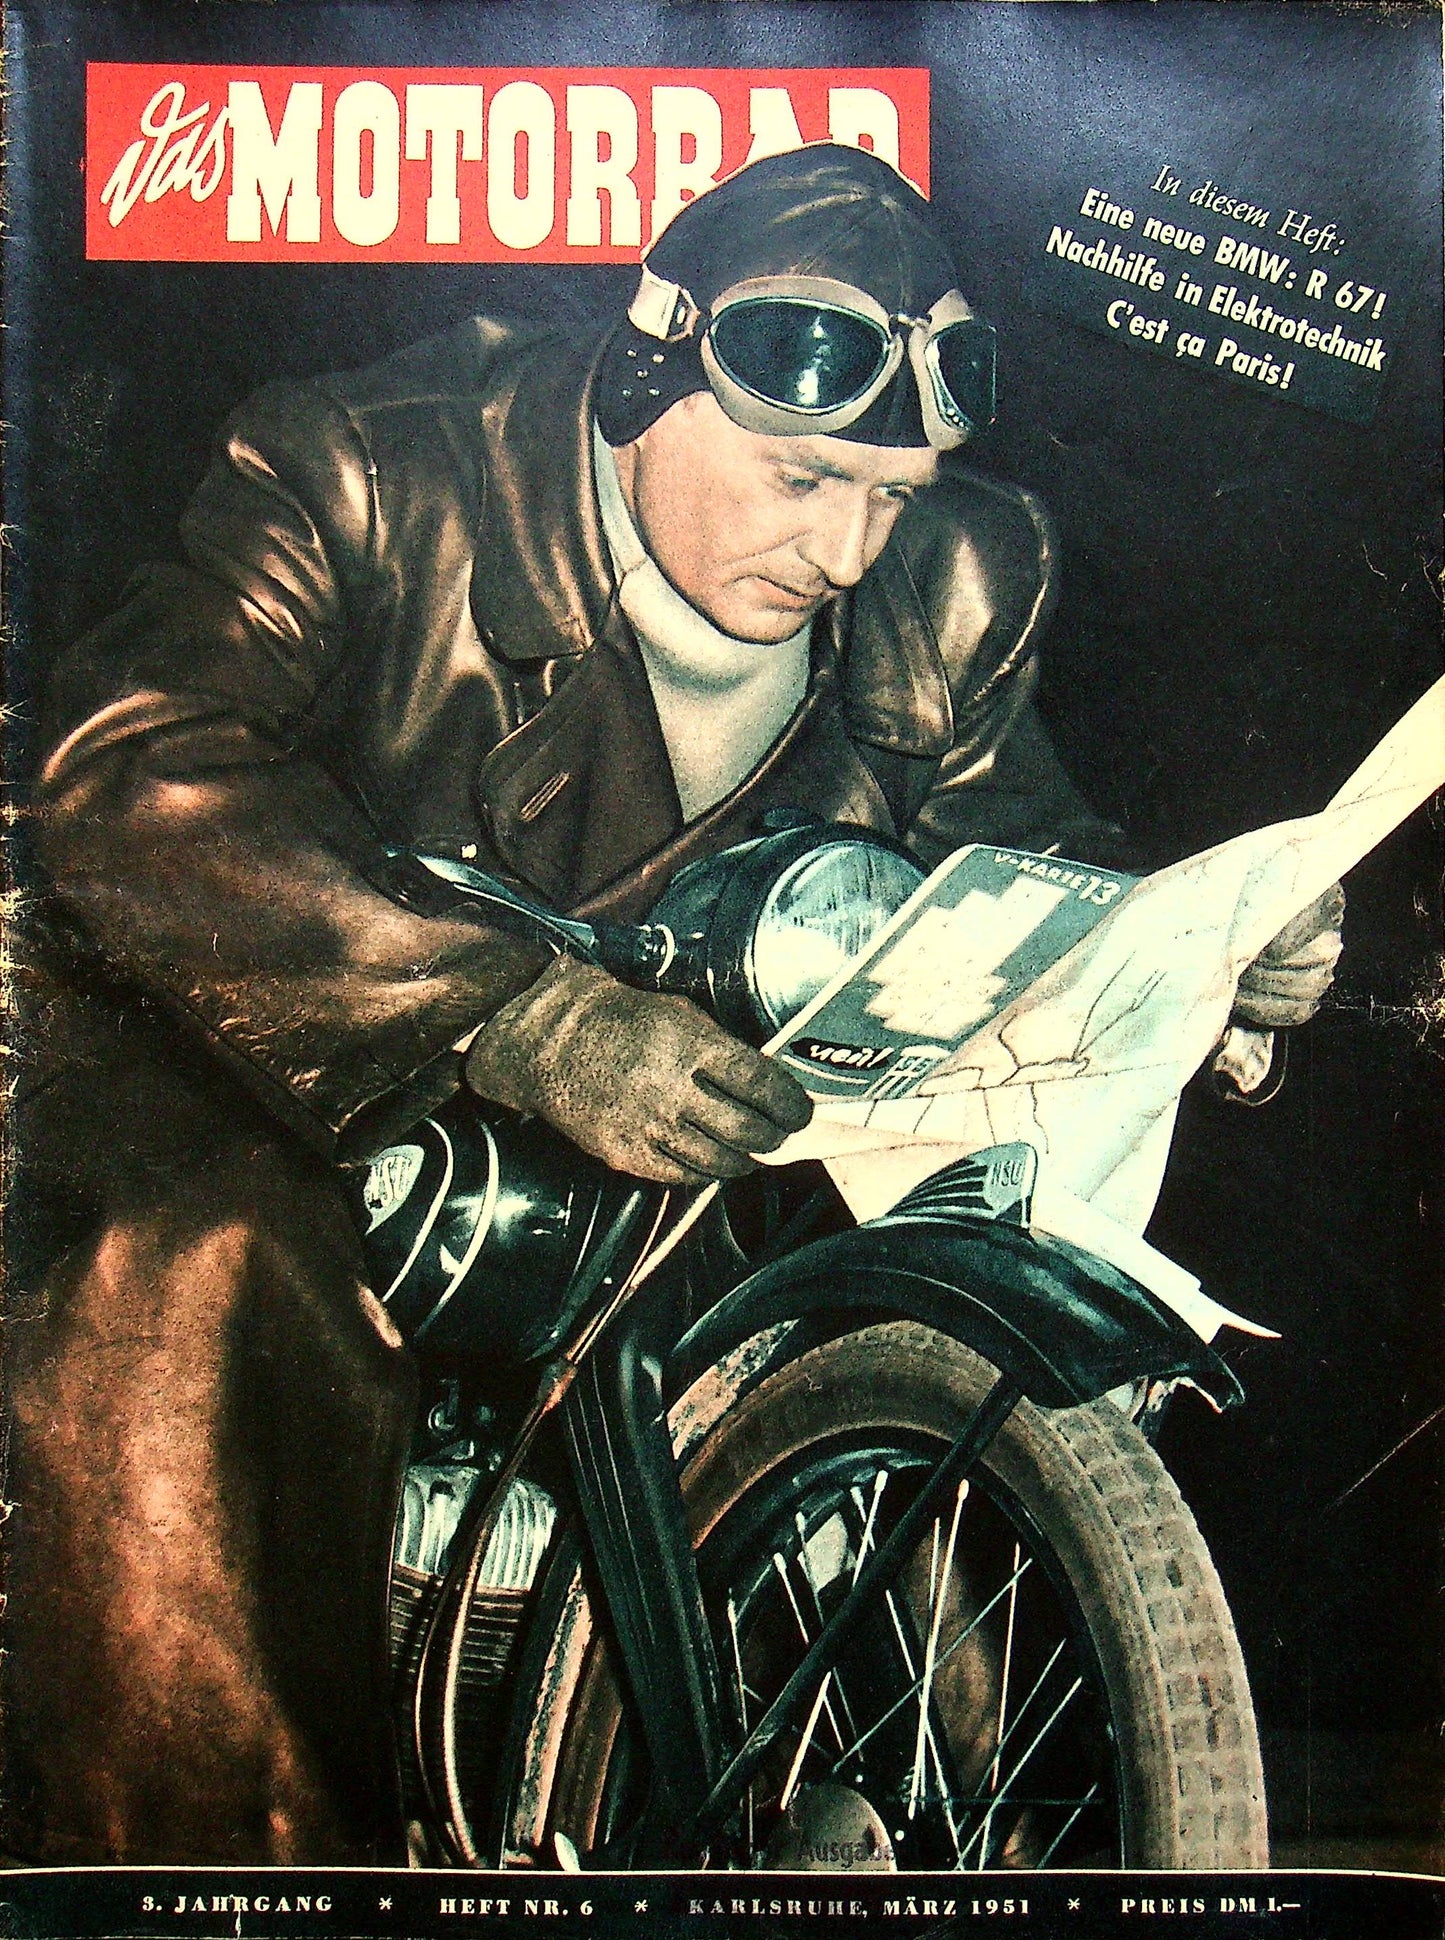 Motorrad 06/1951